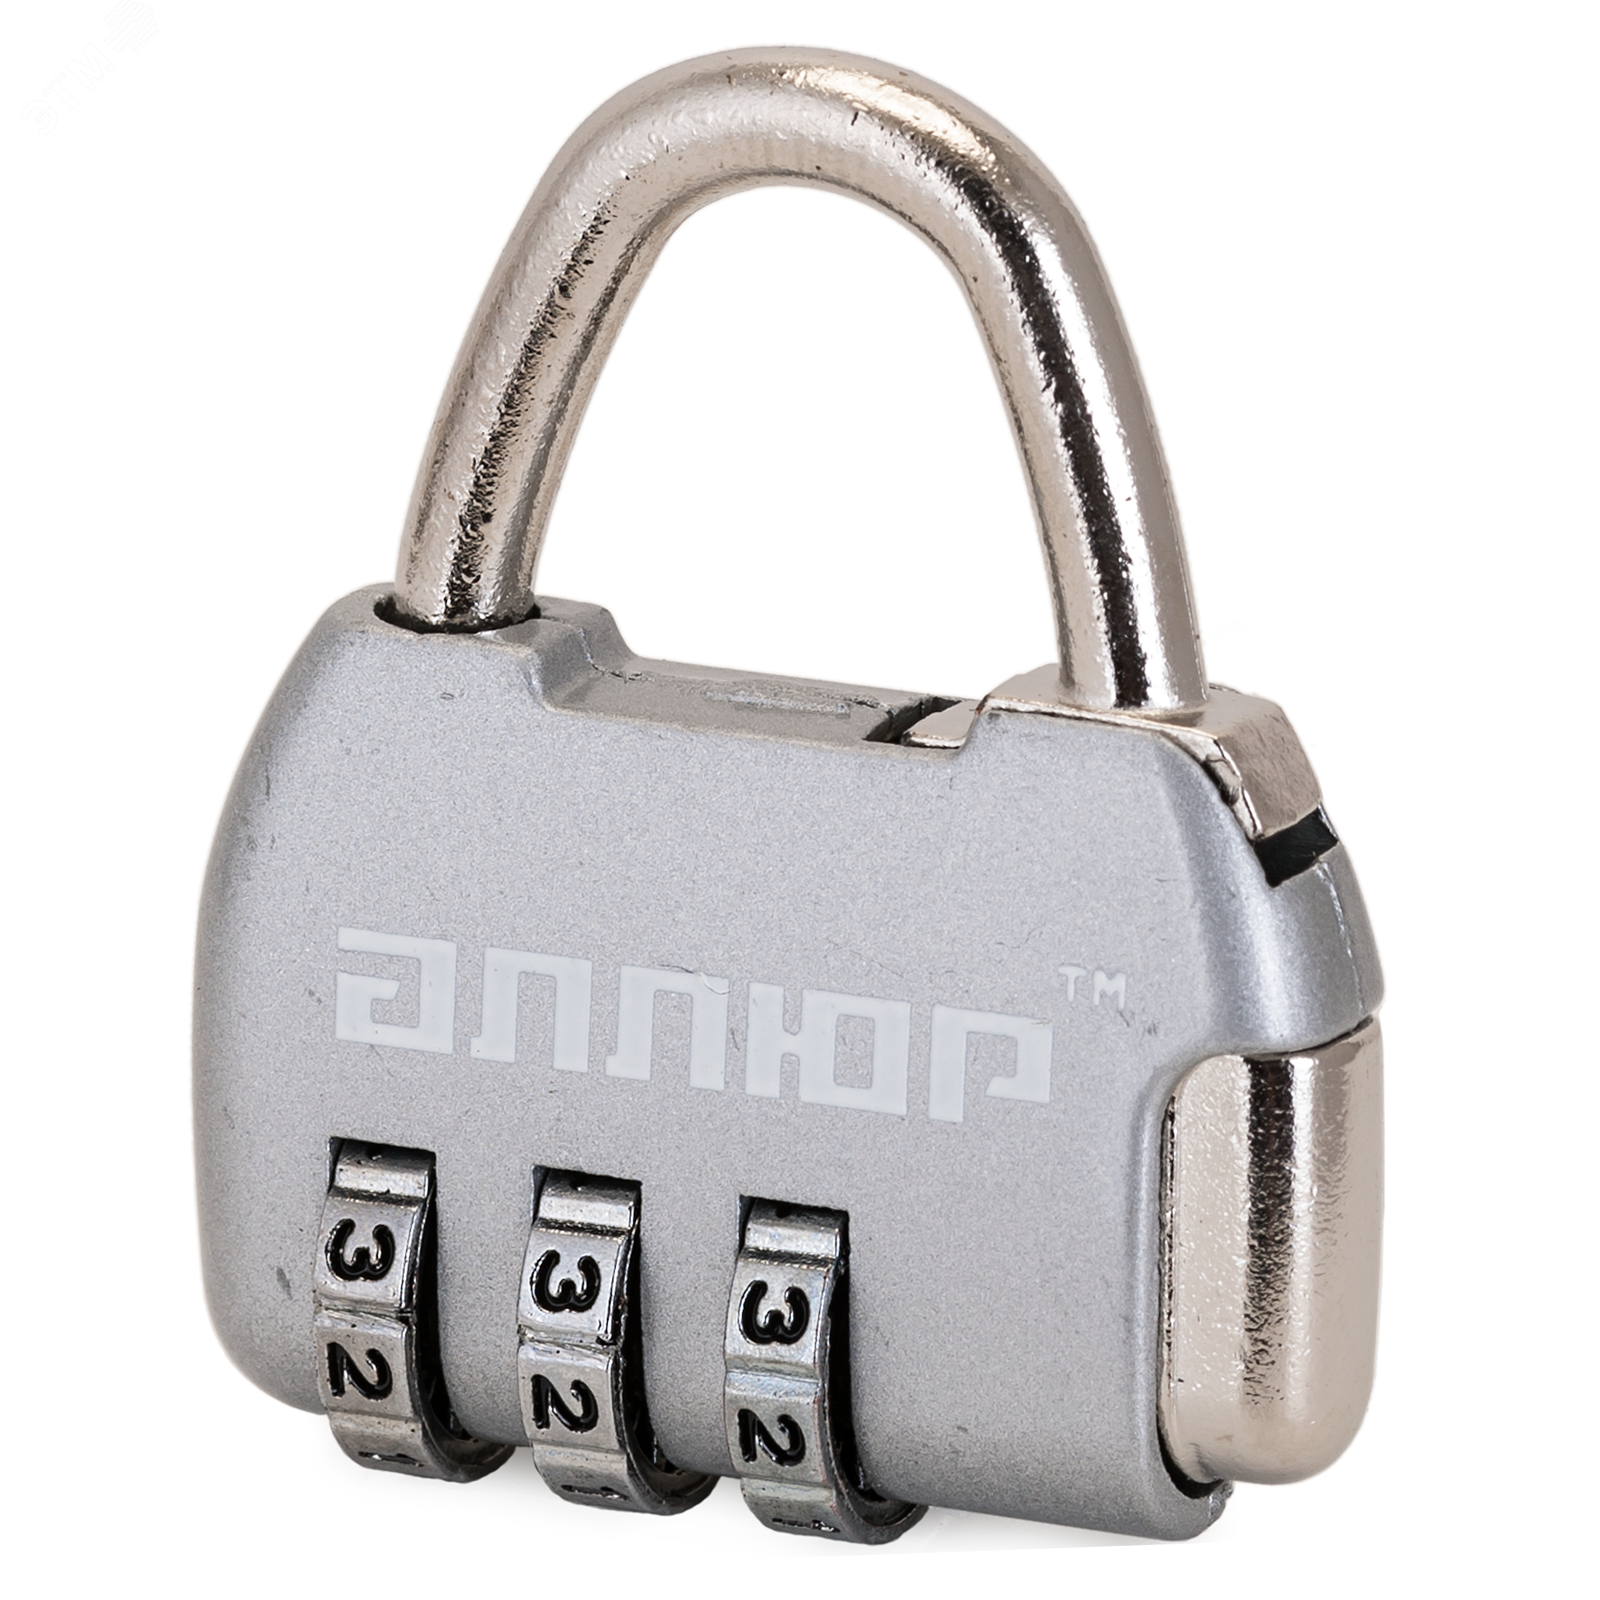 Замок кодовый для защиты от вскрытия сумок, чемоданов и другого багажа, АЛЛЮР ВС1К-35/4 (HA806) CP серебро 10151 ПТК Компания